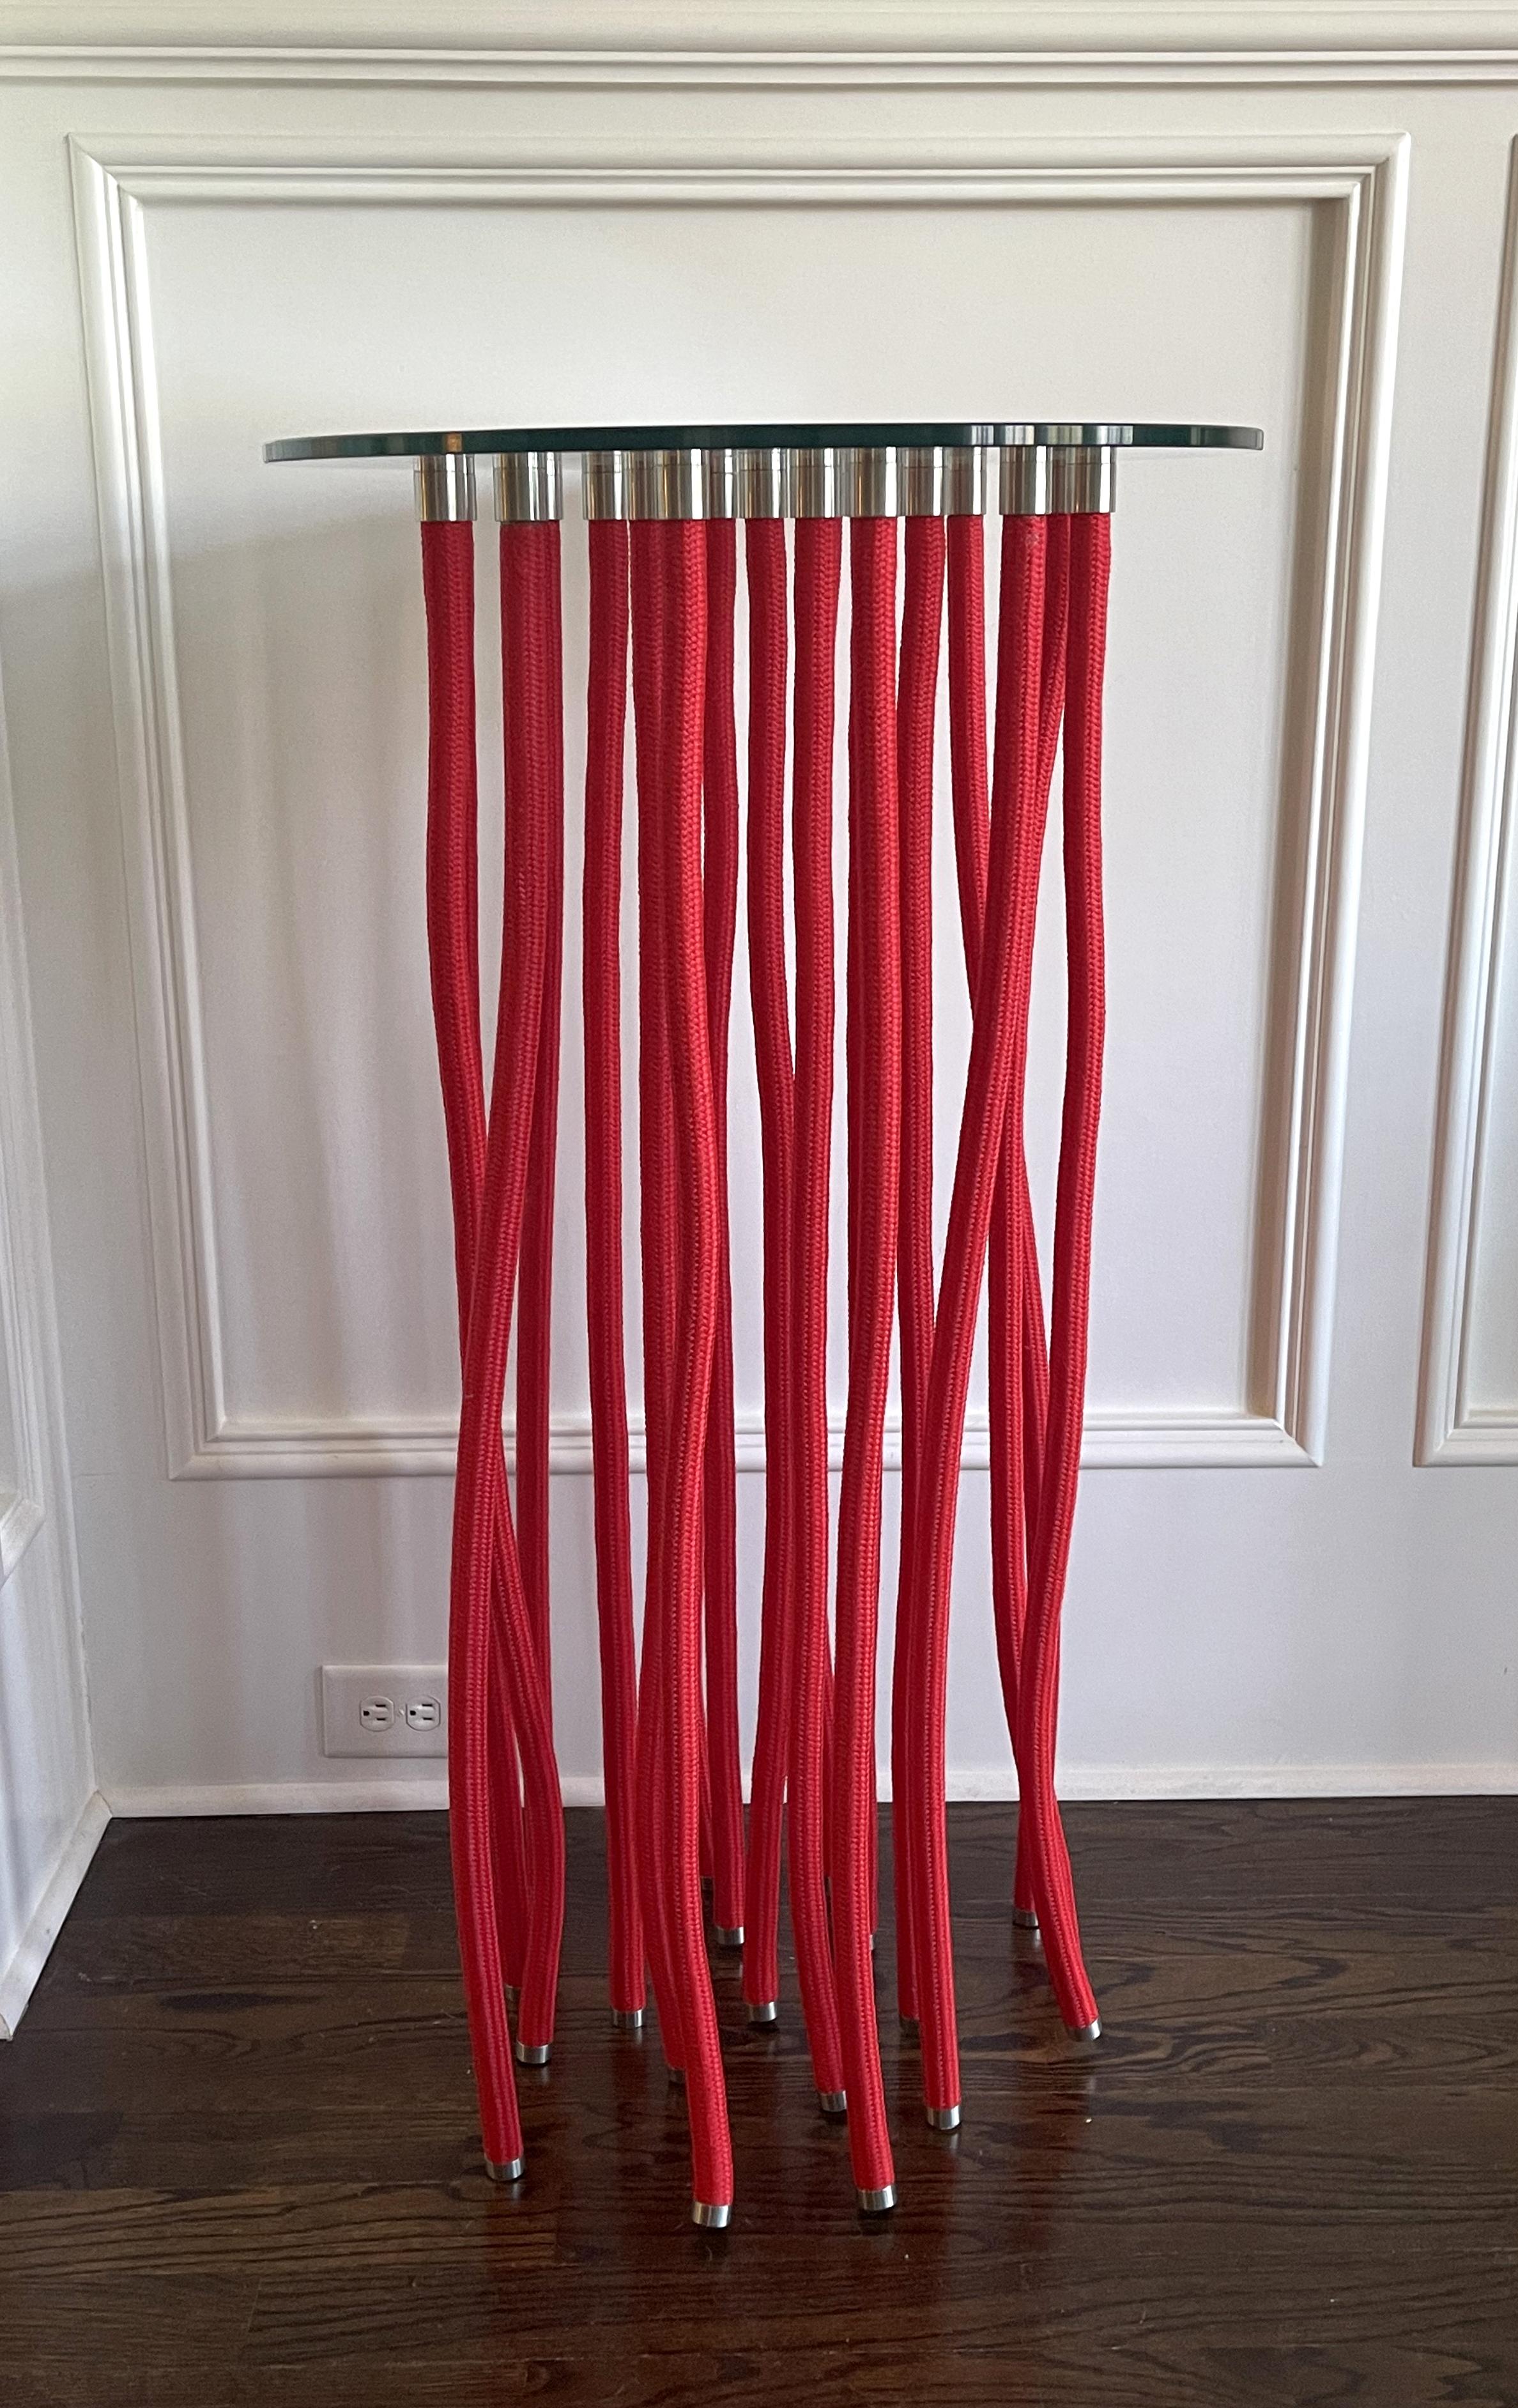 Une grande table rouge ORG conçue par Fabio Novembre (italien, né en 1967) en 2001 pour Cappellini. Le plateau en verre est soutenu par une corde en polypropylène recouverte d'acier avec un raccord apparent en acier inoxydable. La table semble